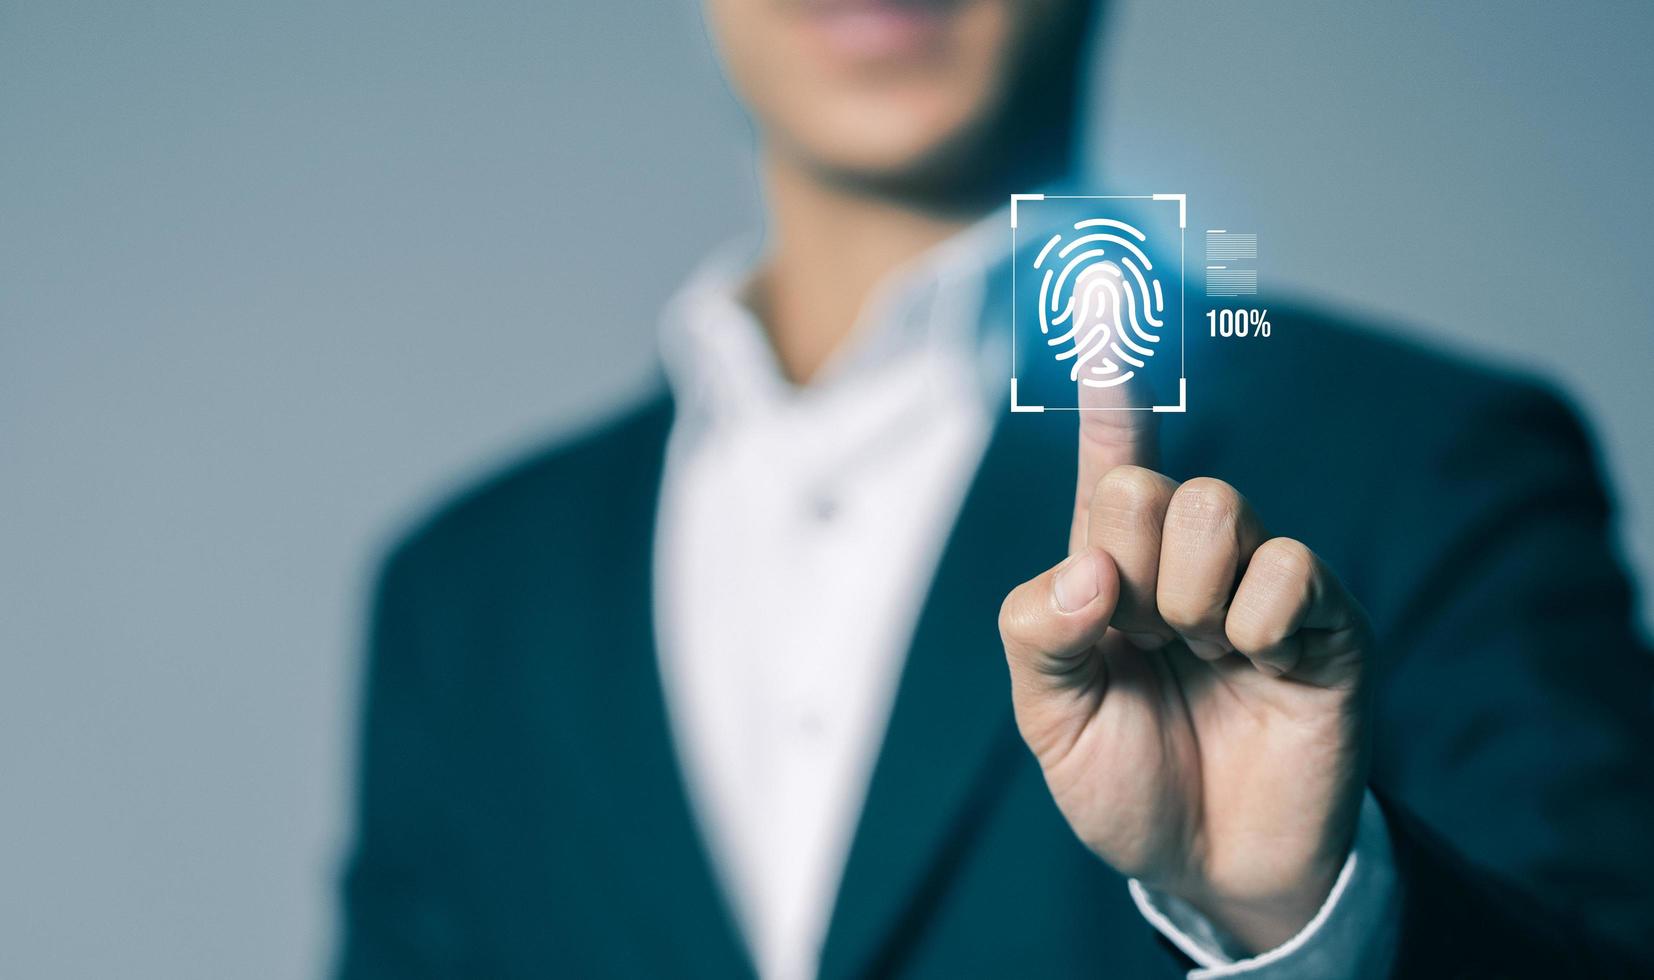 affärsman läser in och biometrisk autentisering på virtuell skärm, fingeravtryck skanna tillhandahåller säkerhet tillgång begrepp, framtida företag säkerhet teknologi och cybernetik. foto